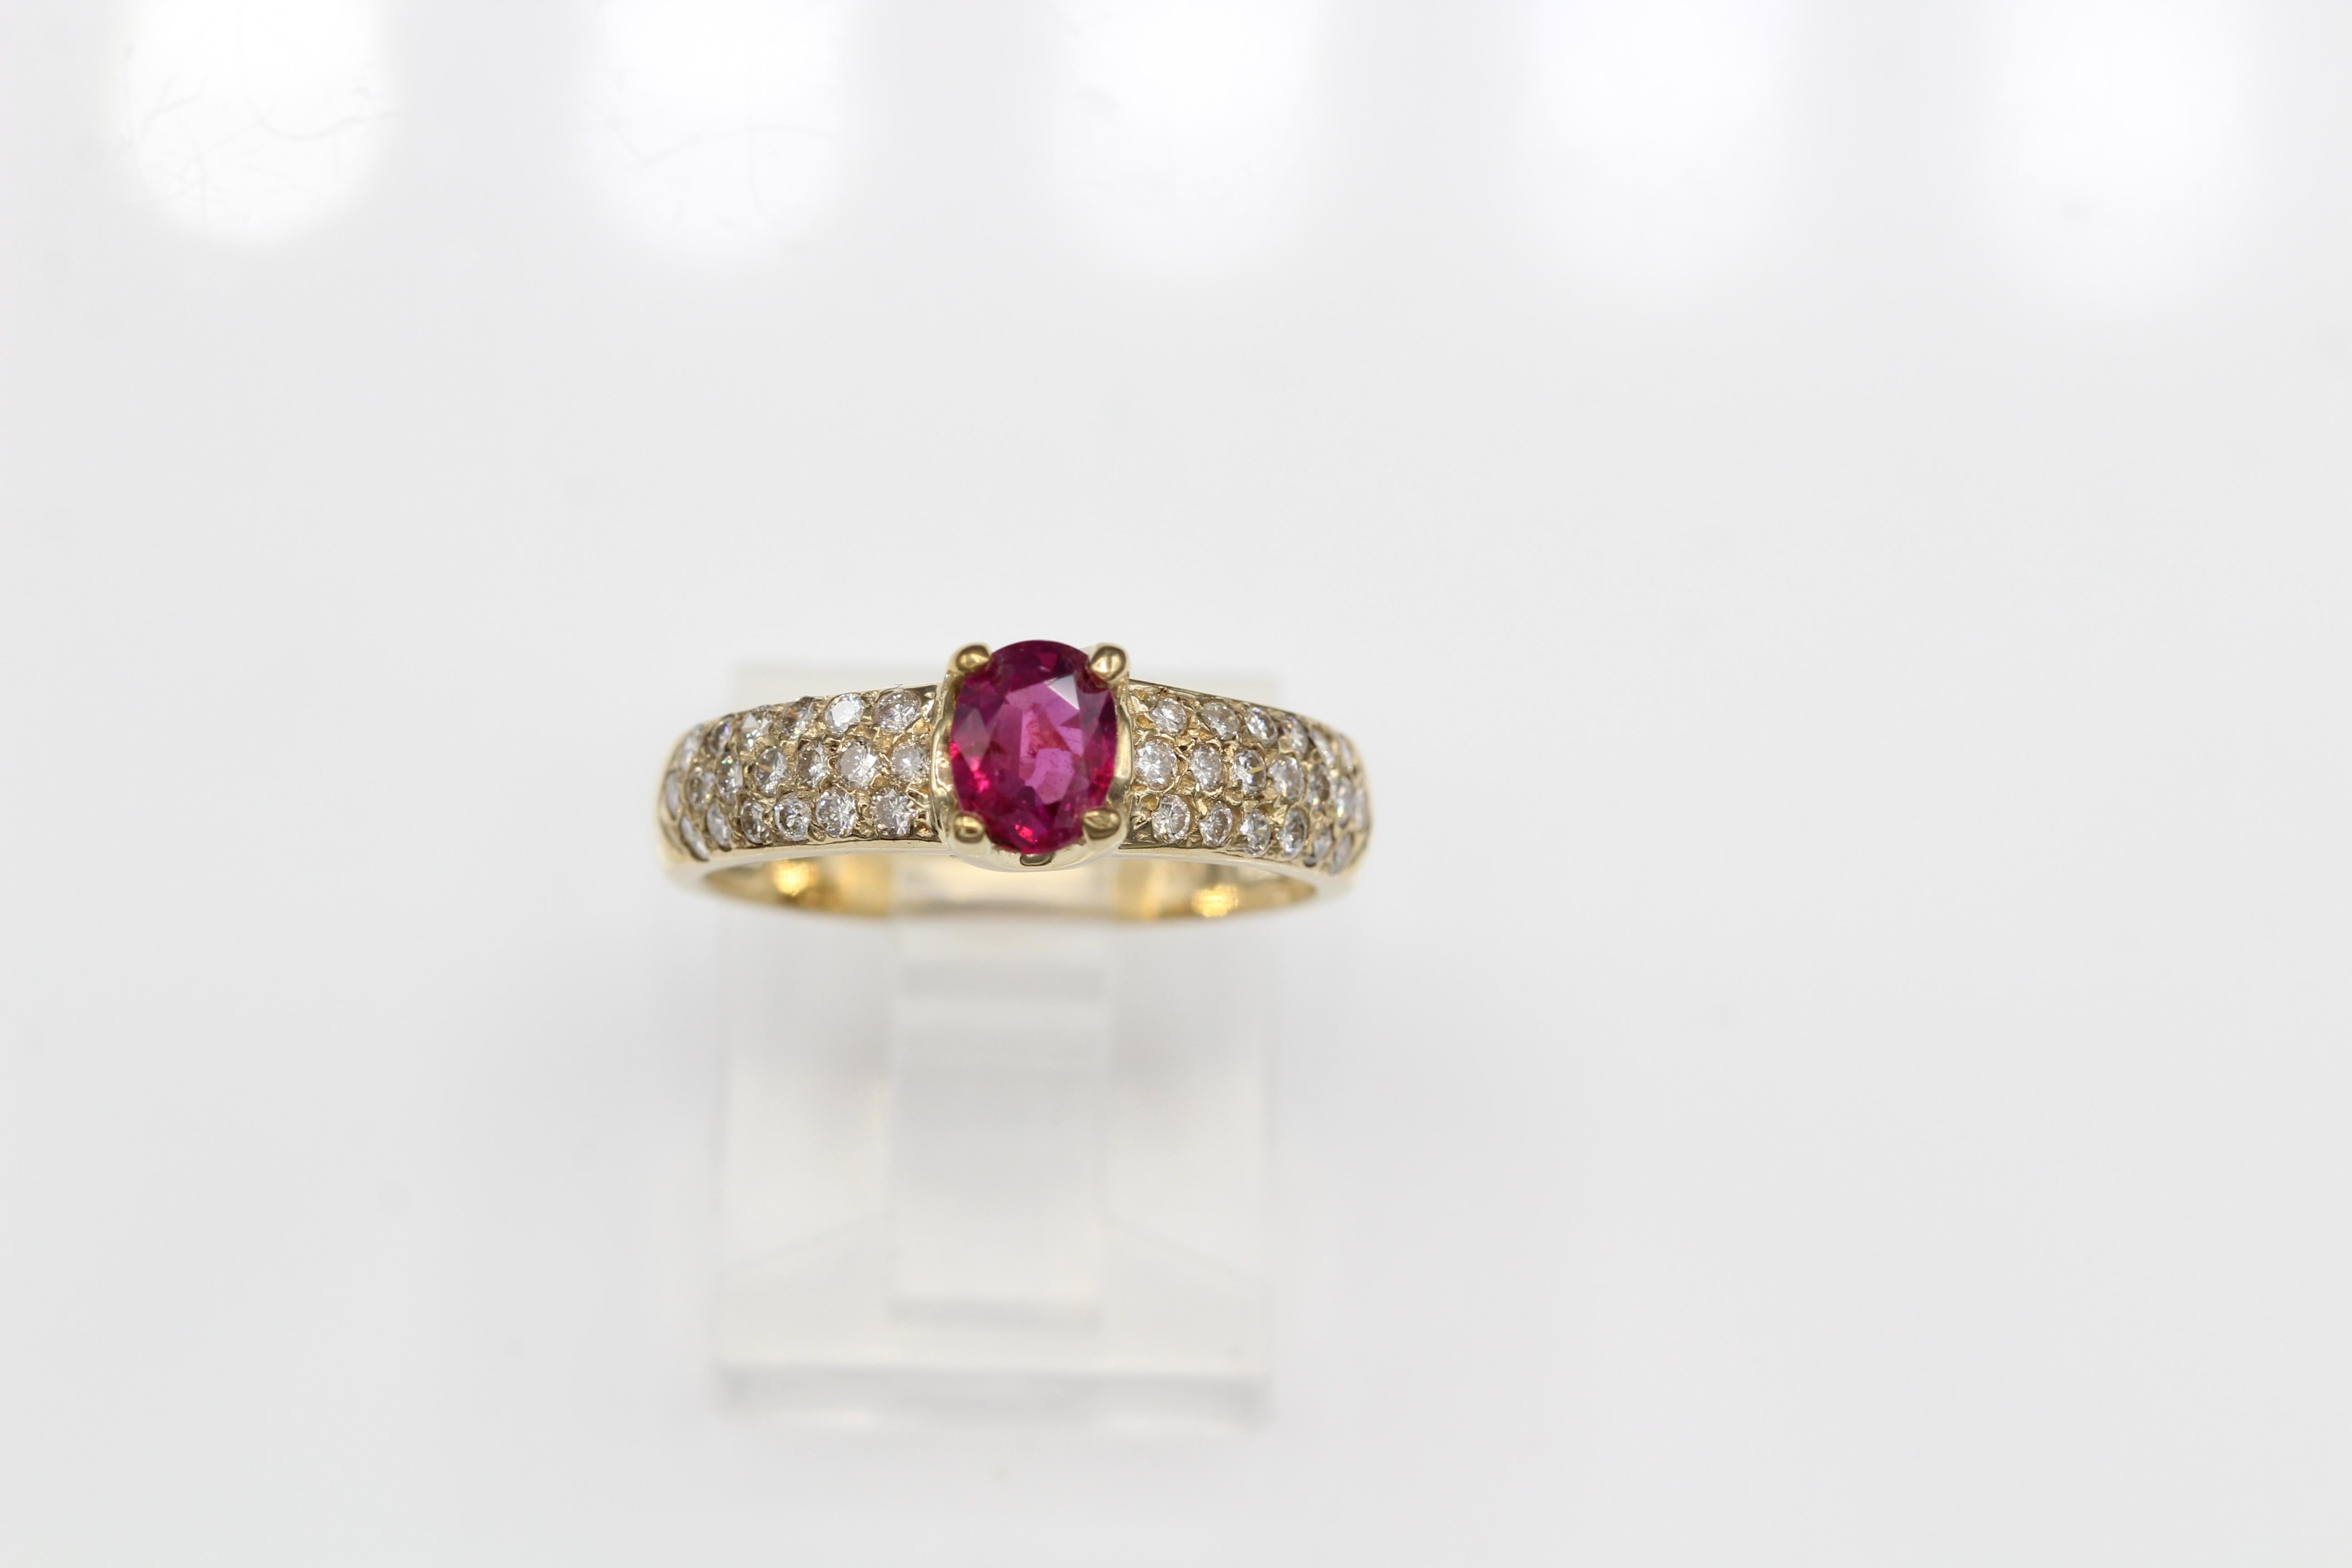 Klassischer Rubinring-Rubin ist 0,65 Karat Diamant 0,50 Karat GH-VS.
14K Gelbgold 2,70 Gramm, Fingergröße 6,5
Alle Natursteine